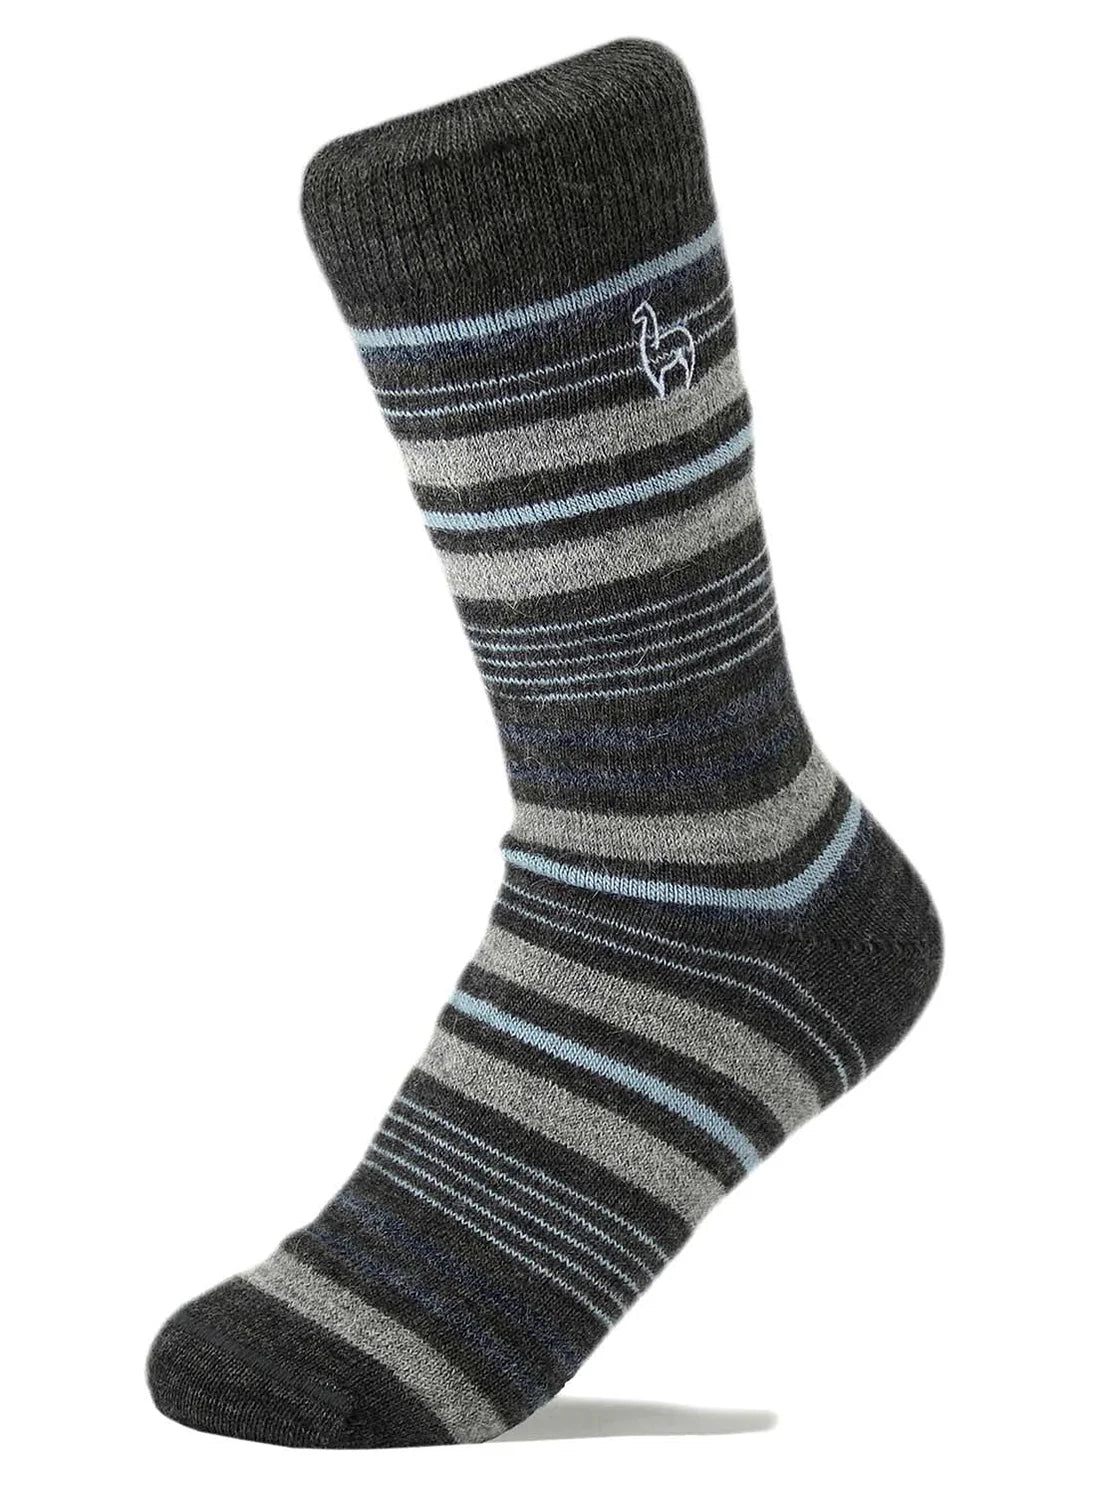 Alpaca Striped Socks